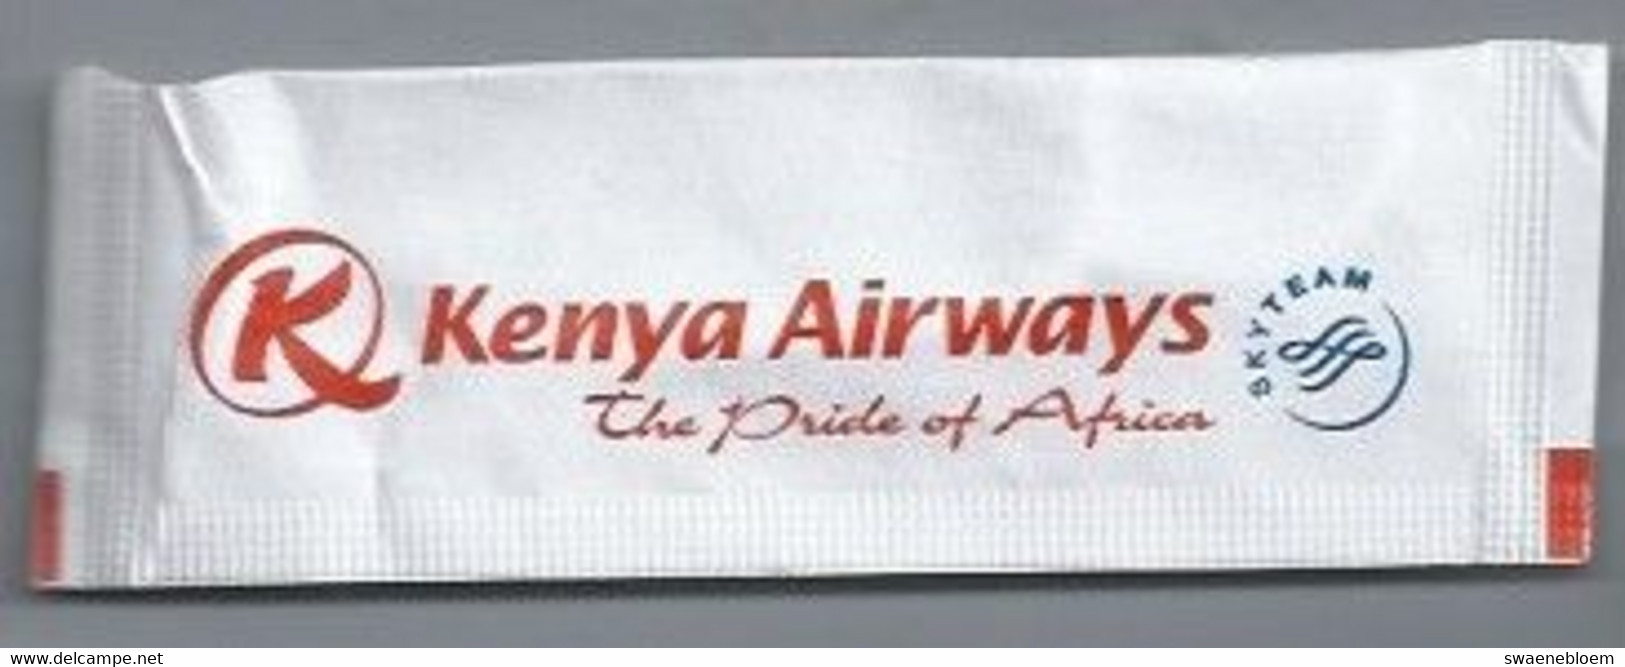 PB.- KENYA AIRWAYS. THE PRIDE OF AFRICA. SKY TEAM. Roerstokje - Cucharas Mezcladoras